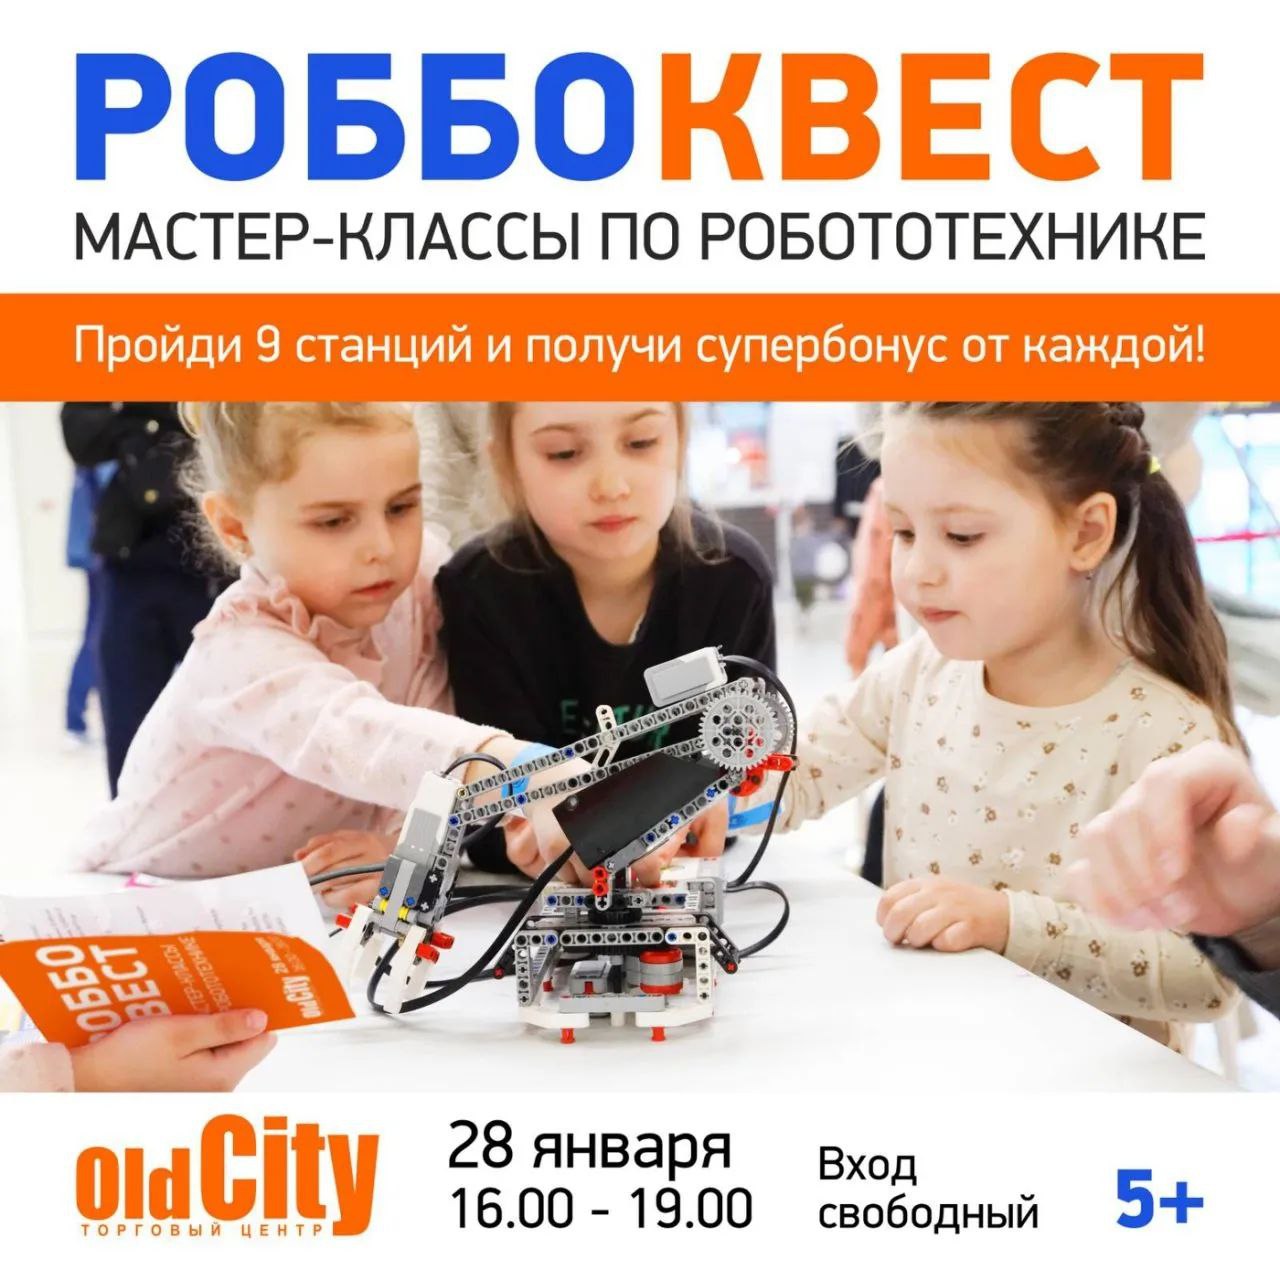 Бесплатно и с подарками для детей от 5 до 16 лет: в OldCity проведут РОББОквест